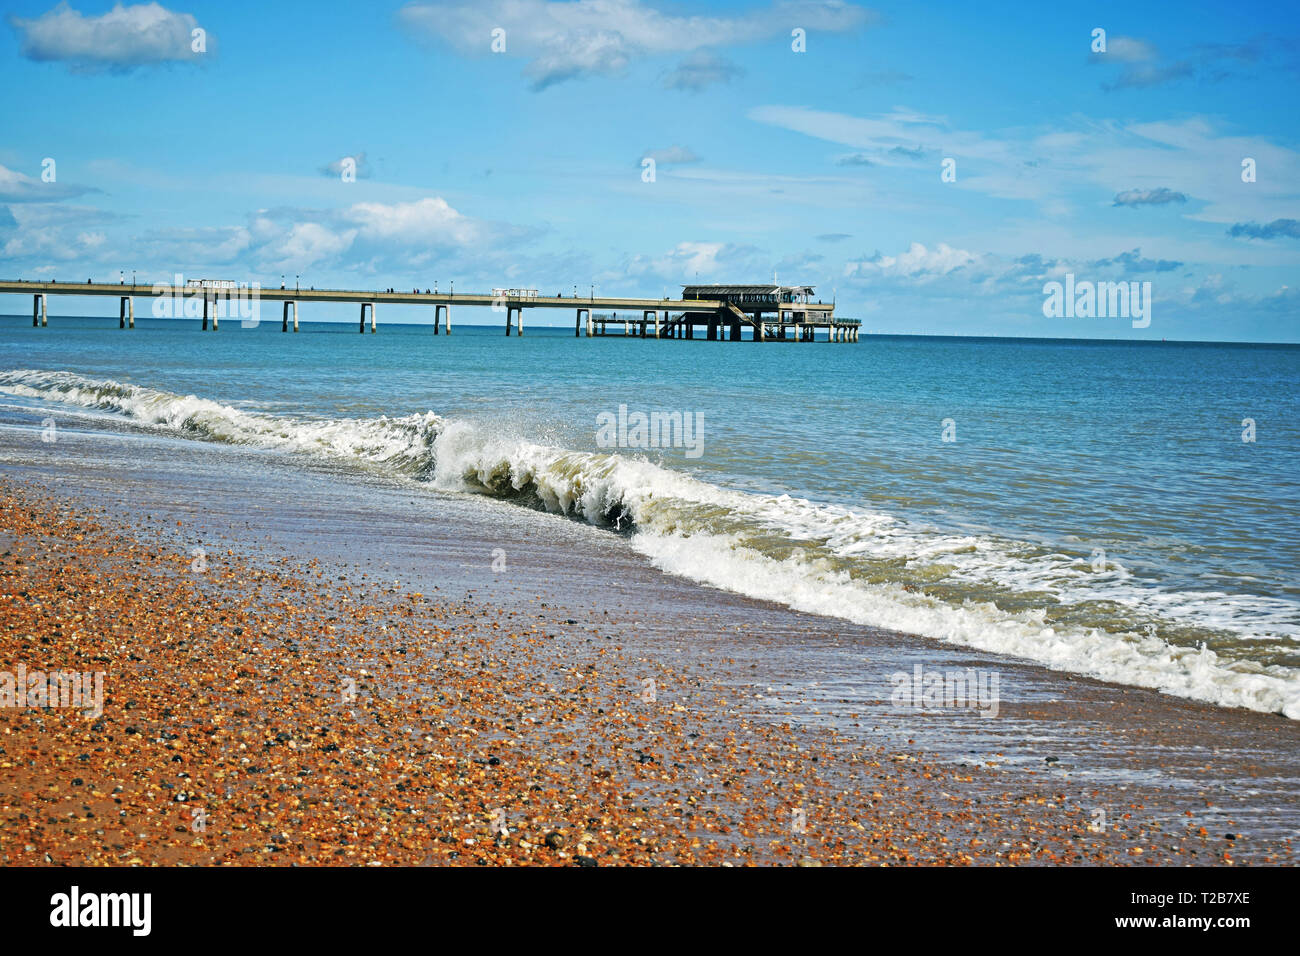 Mare di scena a trattare in Kent England con le onde provenienti sulla spiaggia di ciottoli e il molo che si allunga nel mare blu acqua con un cielo nuvoloso sopra Foto Stock